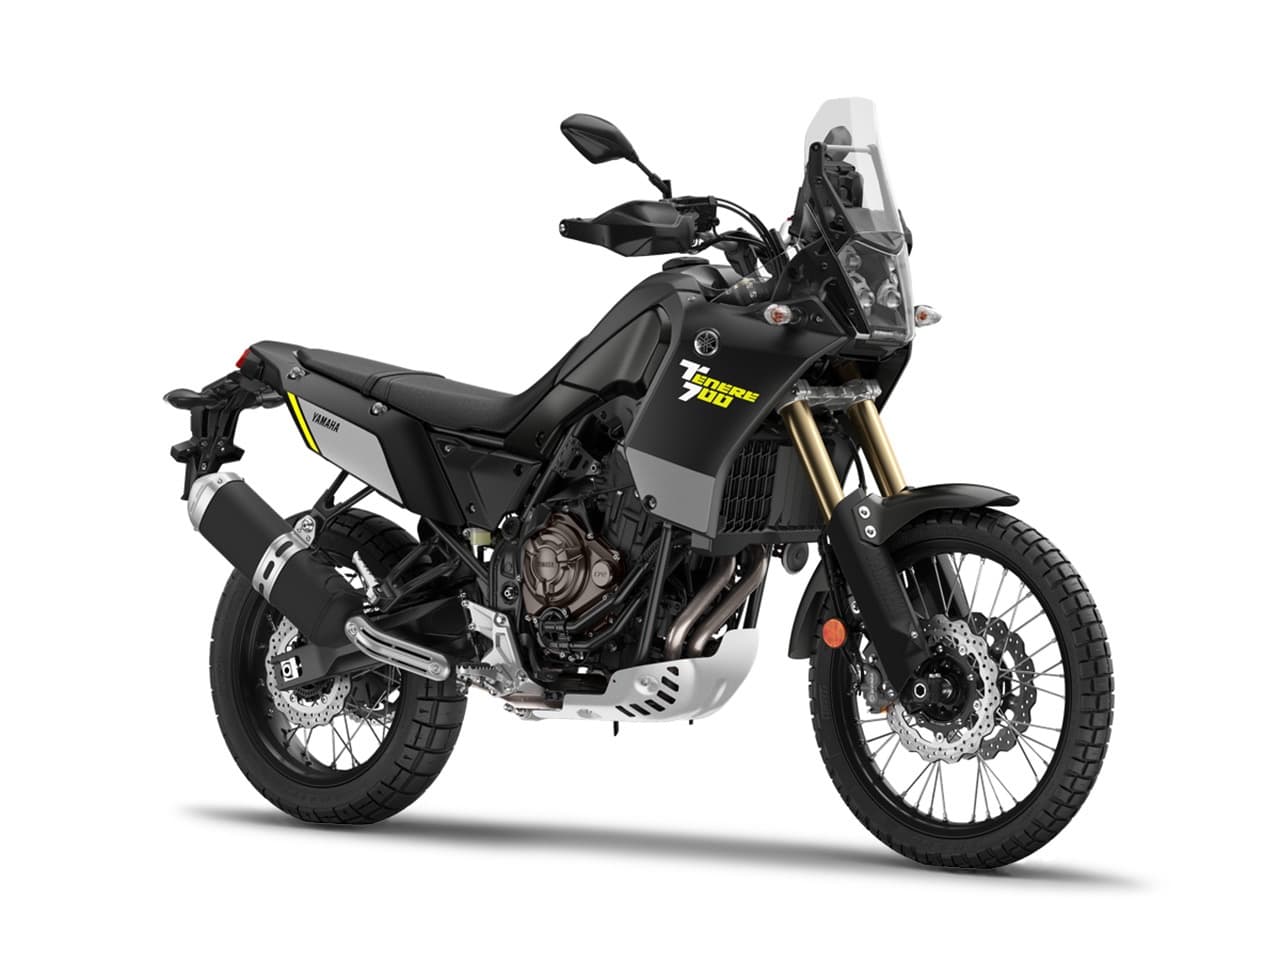 2019 Yamaha Ternere 700 Black